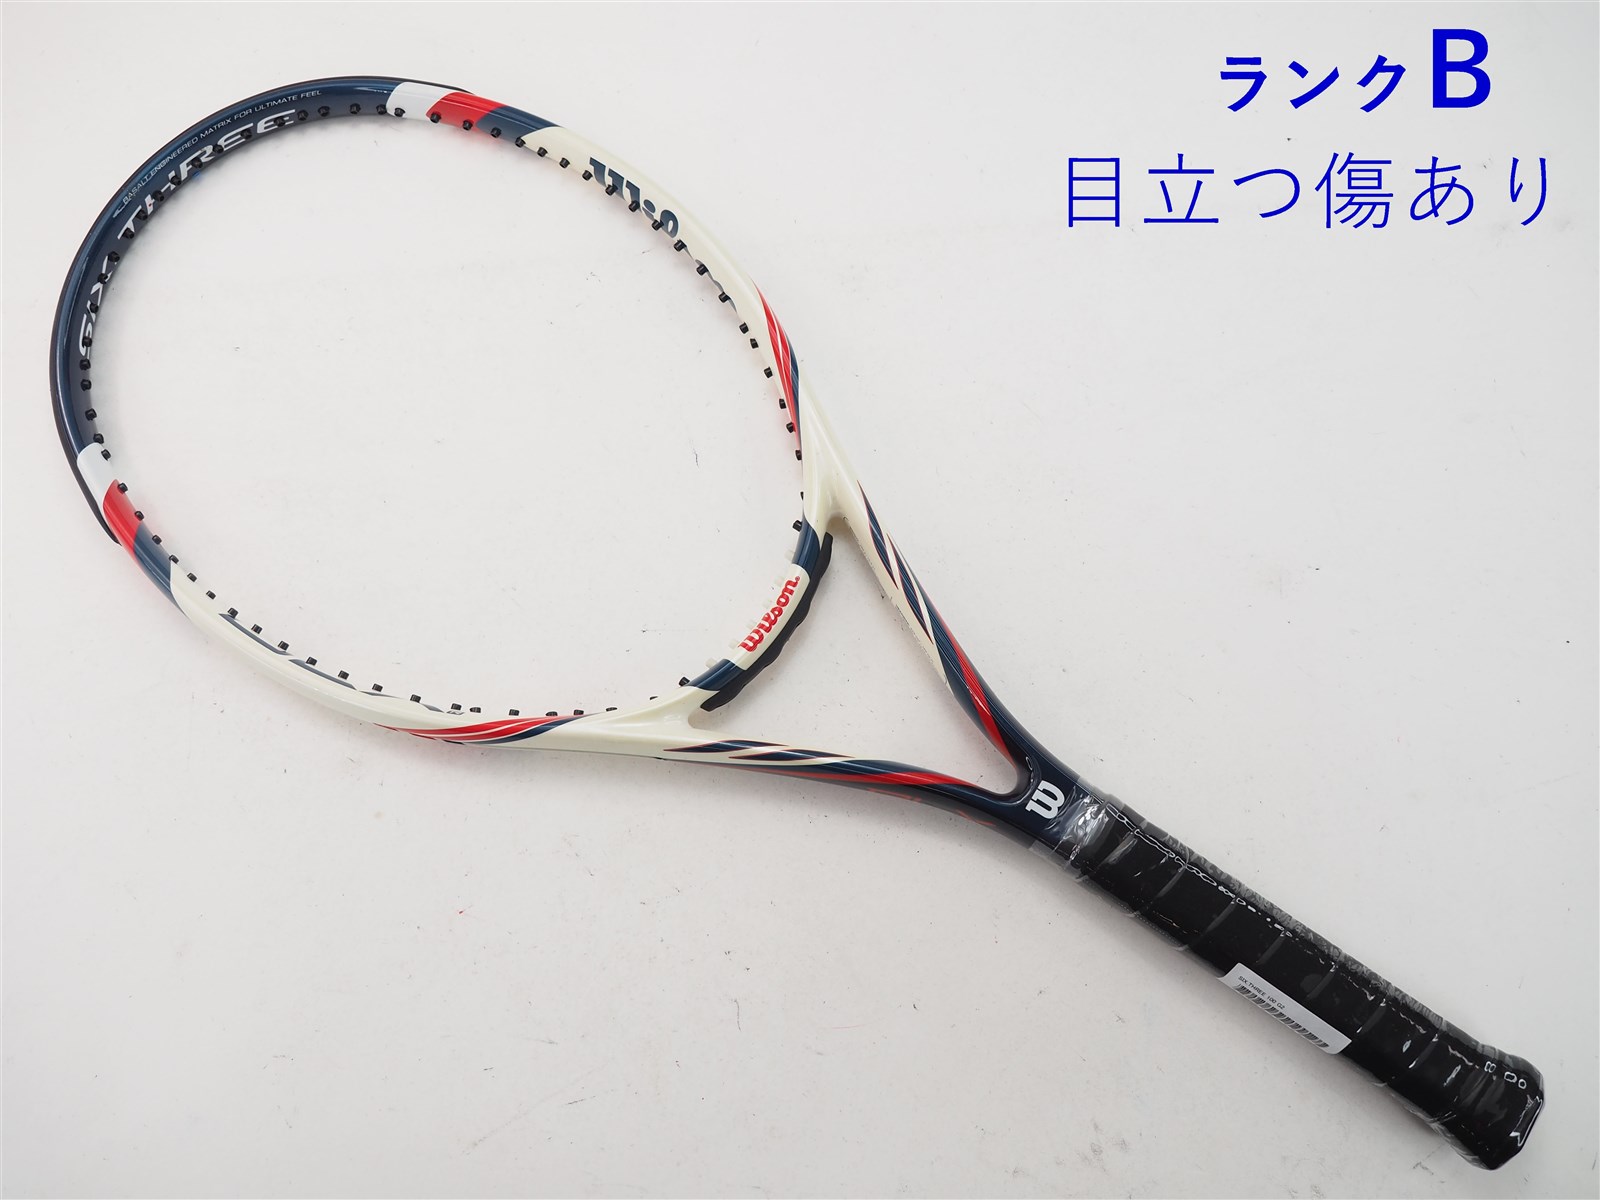 テニスラケット ウィルソン シックススリー100 (G1)WILSON SIX.THREE